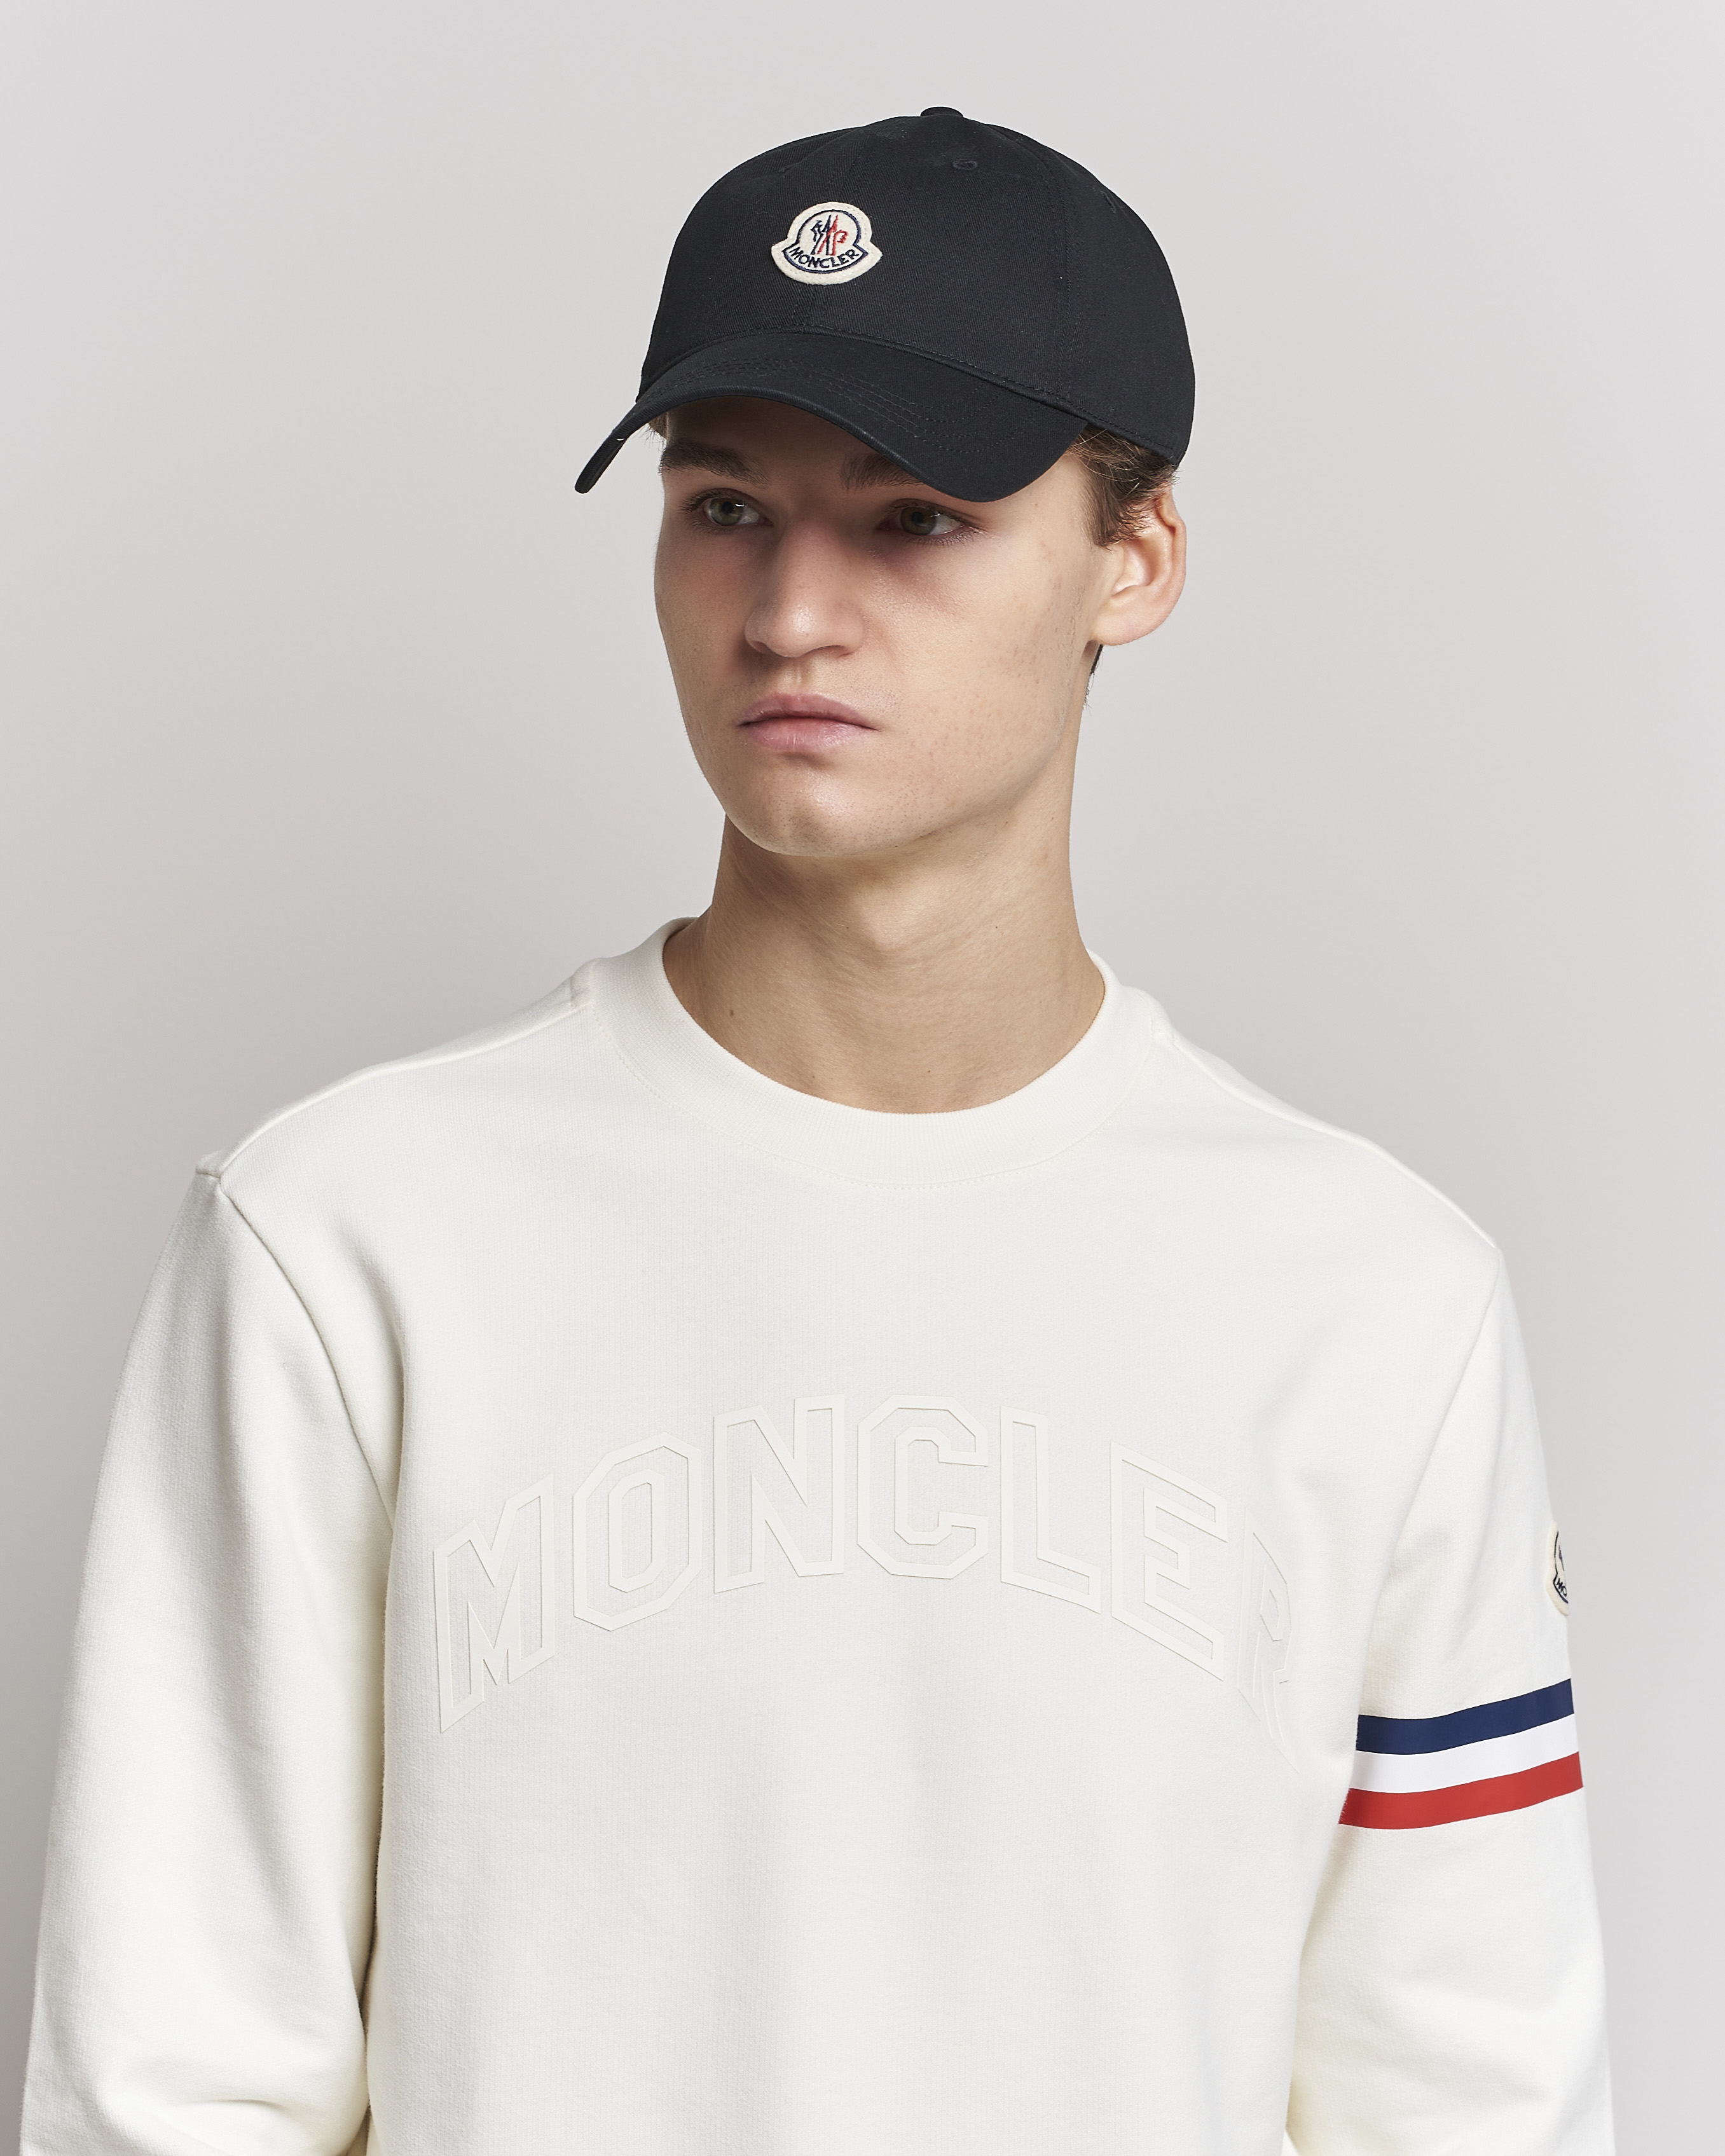 Men | Hats & Caps | Moncler | Baseball Cap Black